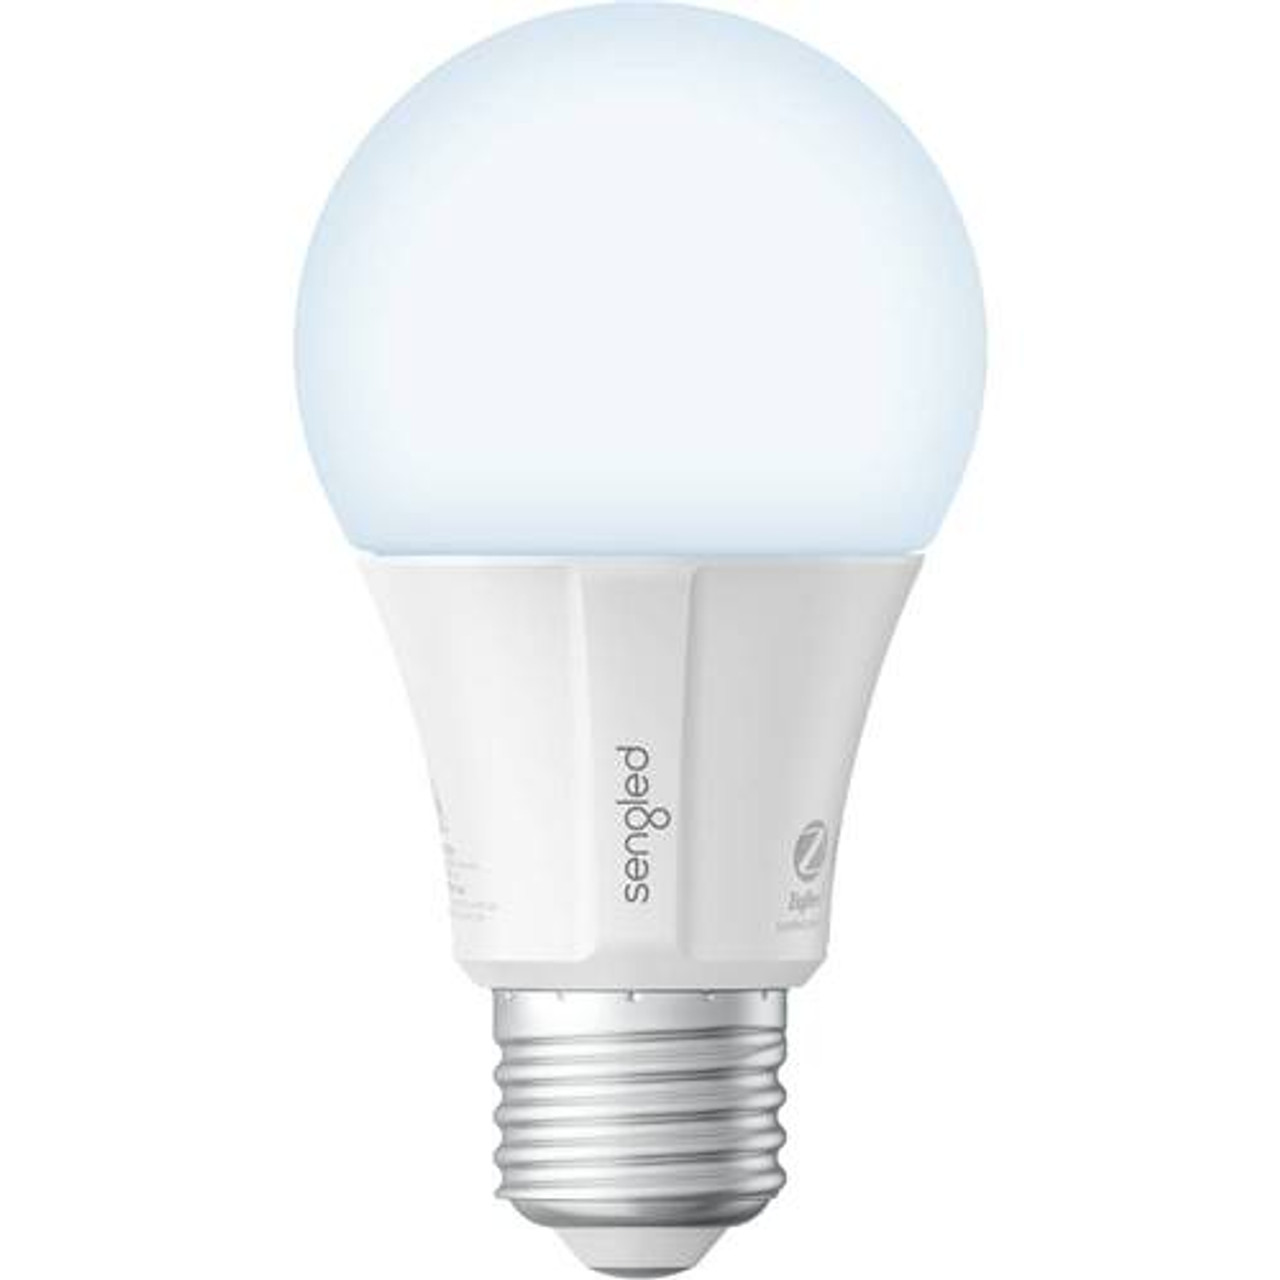 Sengled - A19 Add-On Smart LED Light Bulb - White